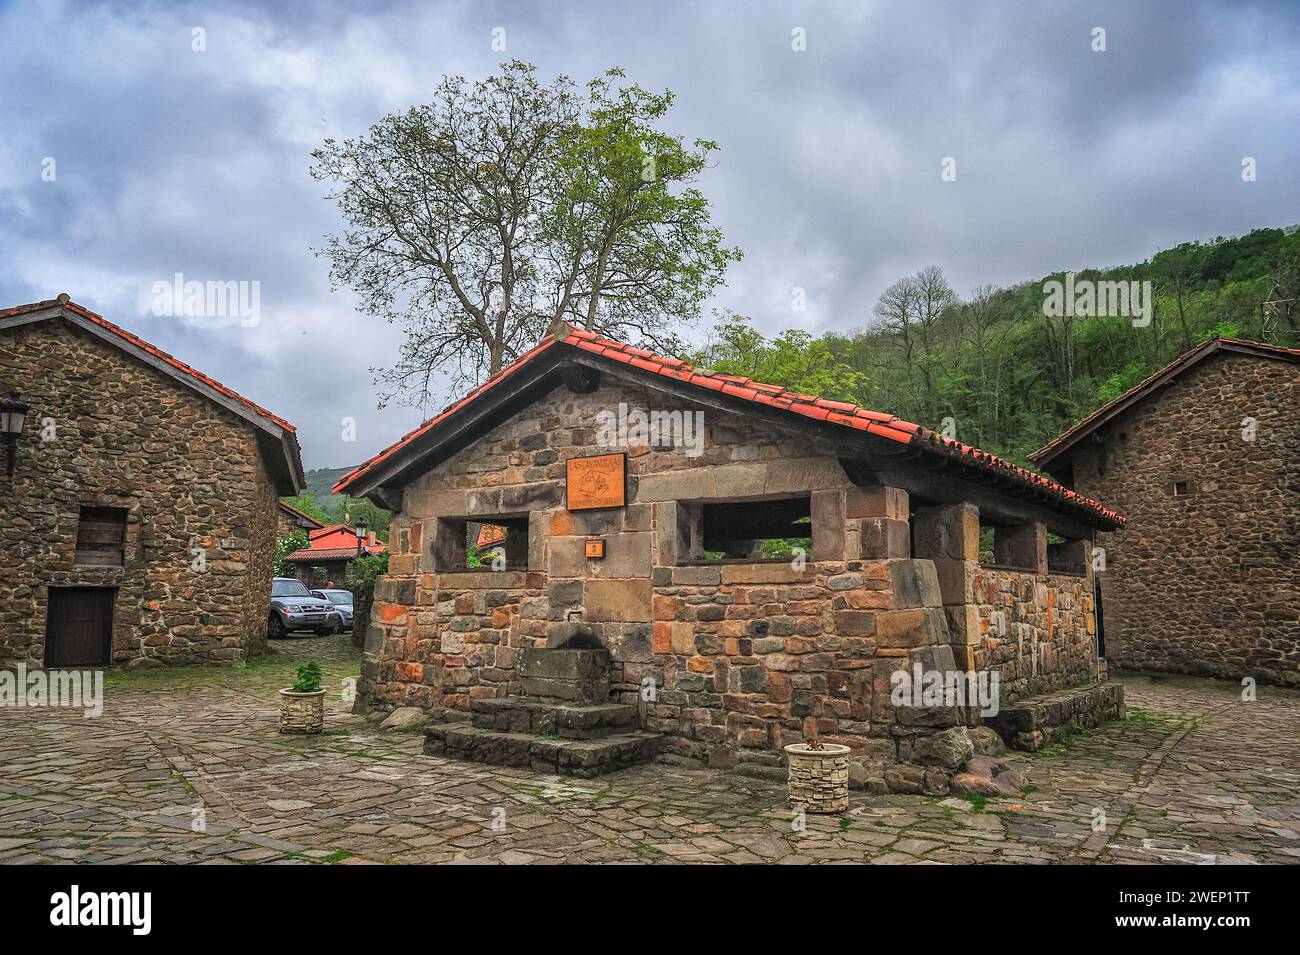 Un lavoir traditionnel bien conservé au cœur d'un village espagnol, entouré de rues pavées et de vieux bâtiments en pierre Banque D'Images